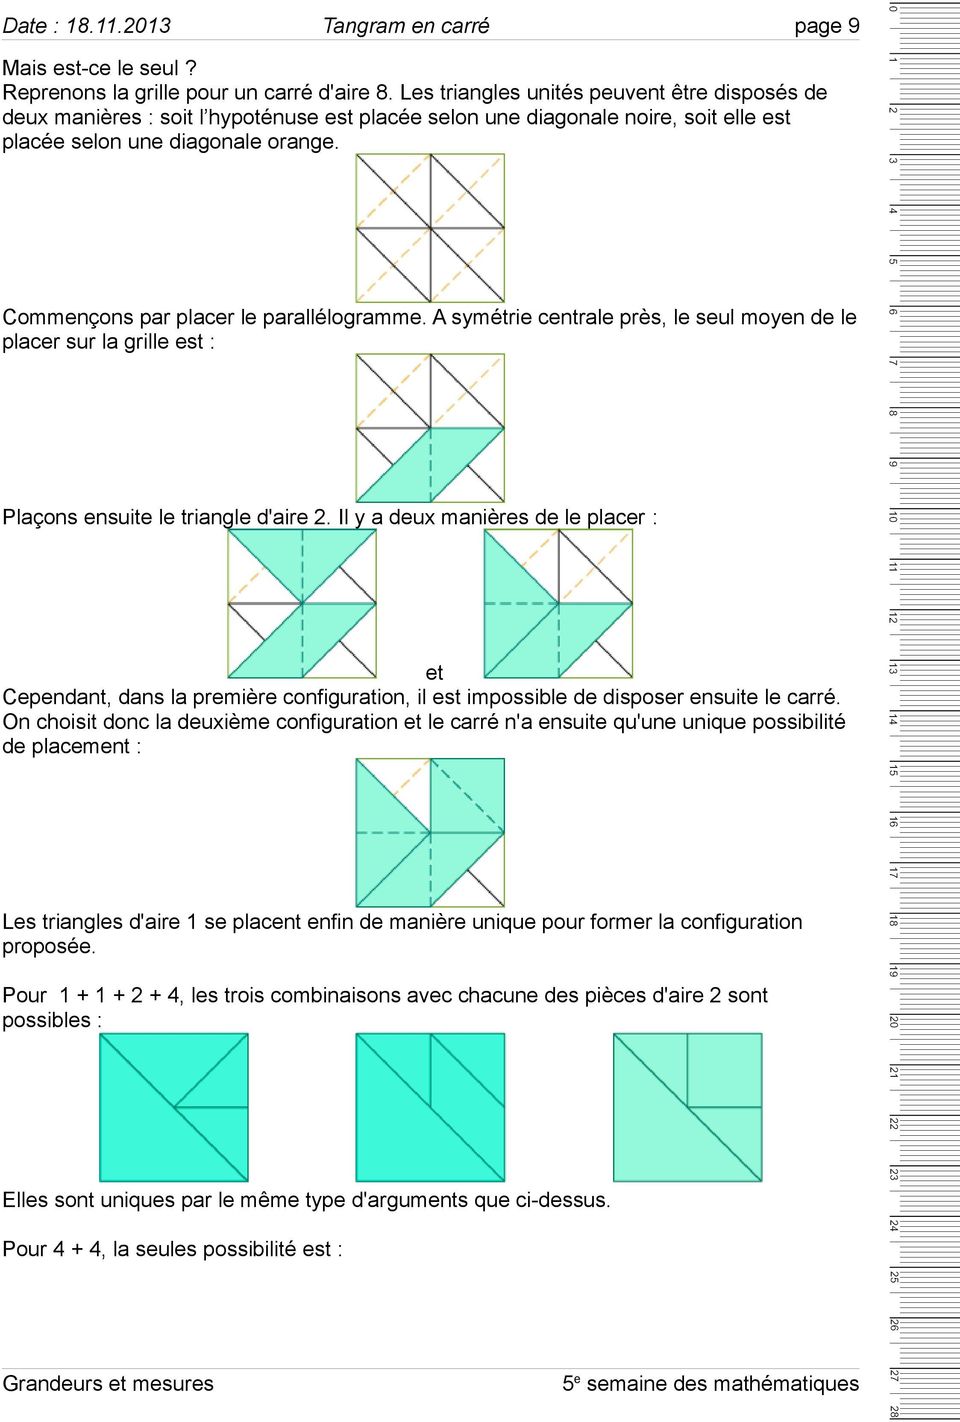 Commençons par placer le parallélogramme. A symétrie centrale près, le seul moyen de le placer sur la grille est : Plaçons ensuite le triangle d'aire 2.